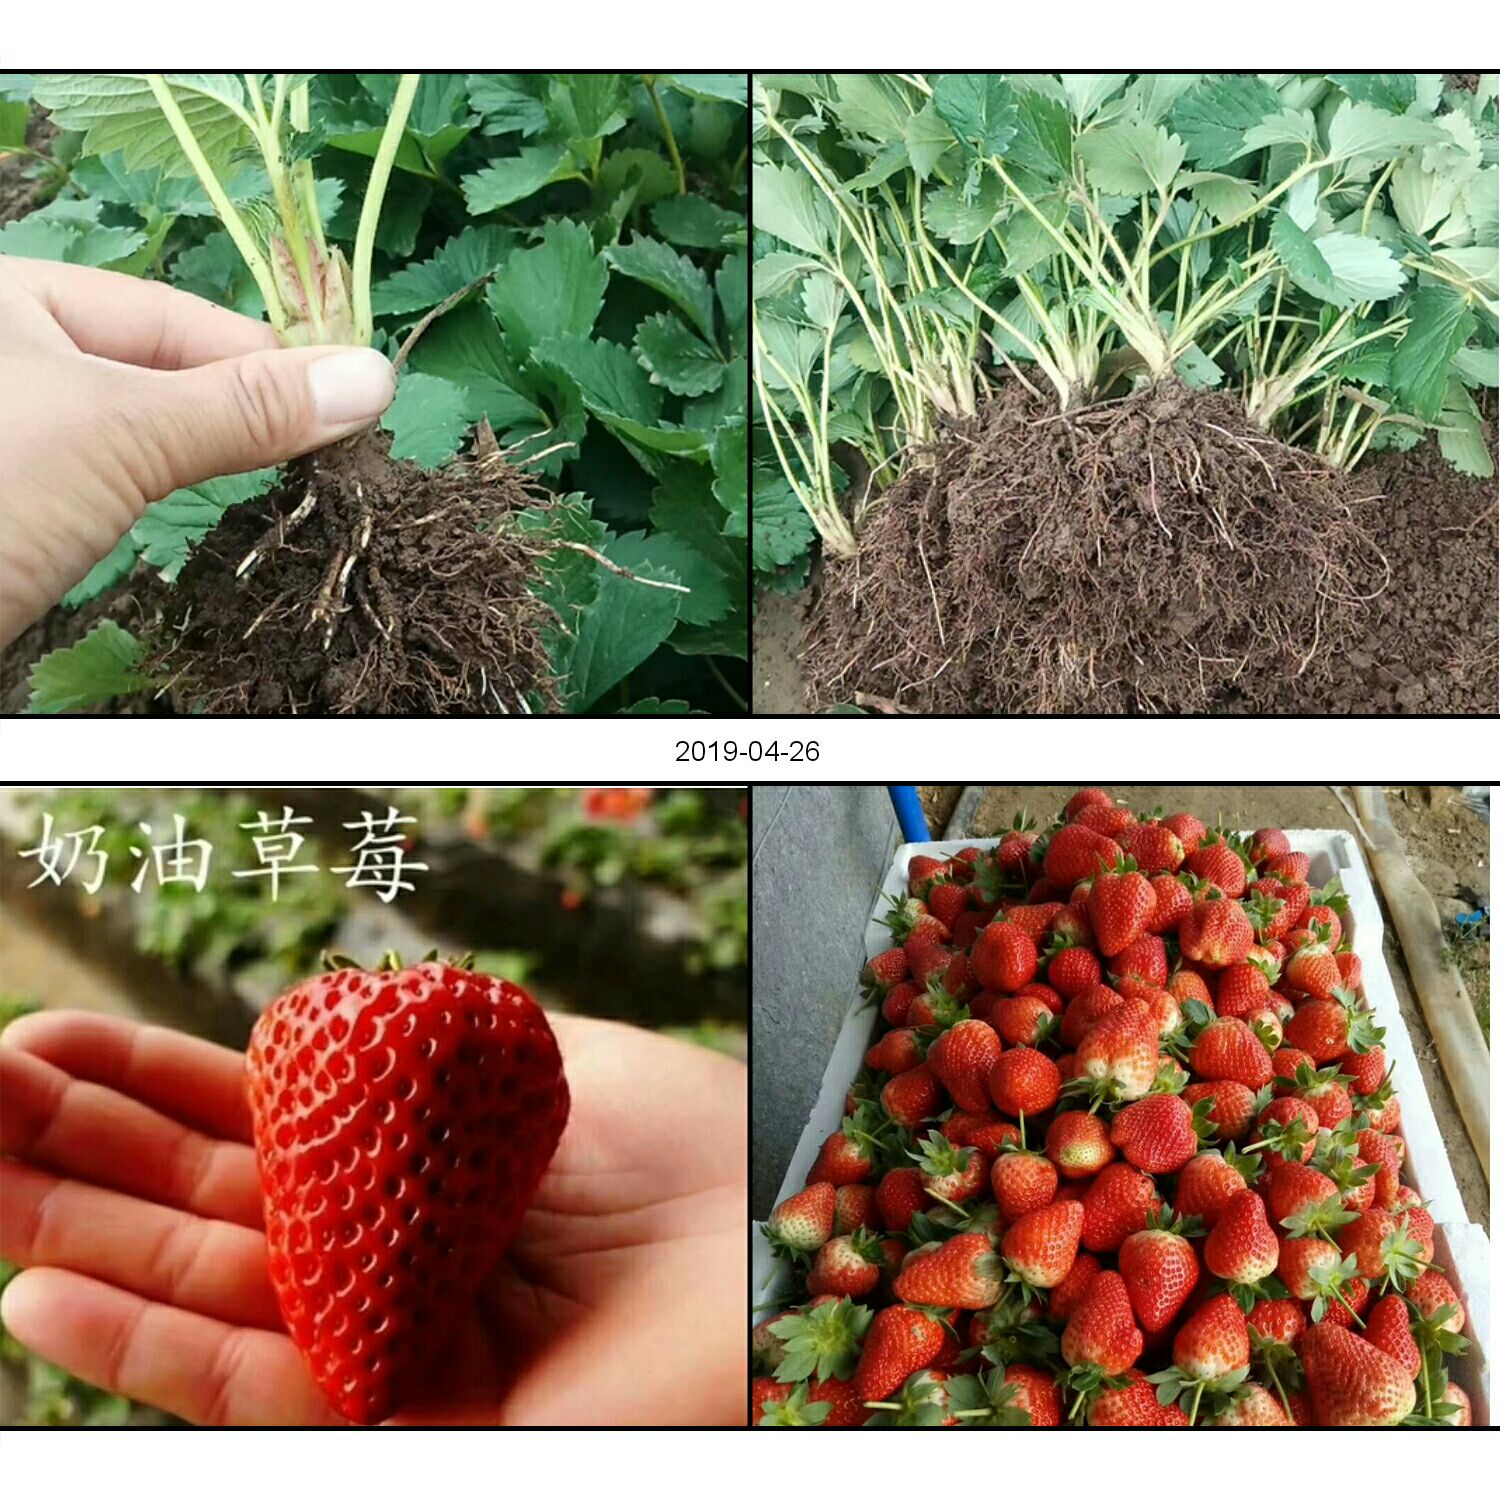 商品详情 润景园艺场常年供应脱毒二代草莓苗,品种齐全,价格优惠,全